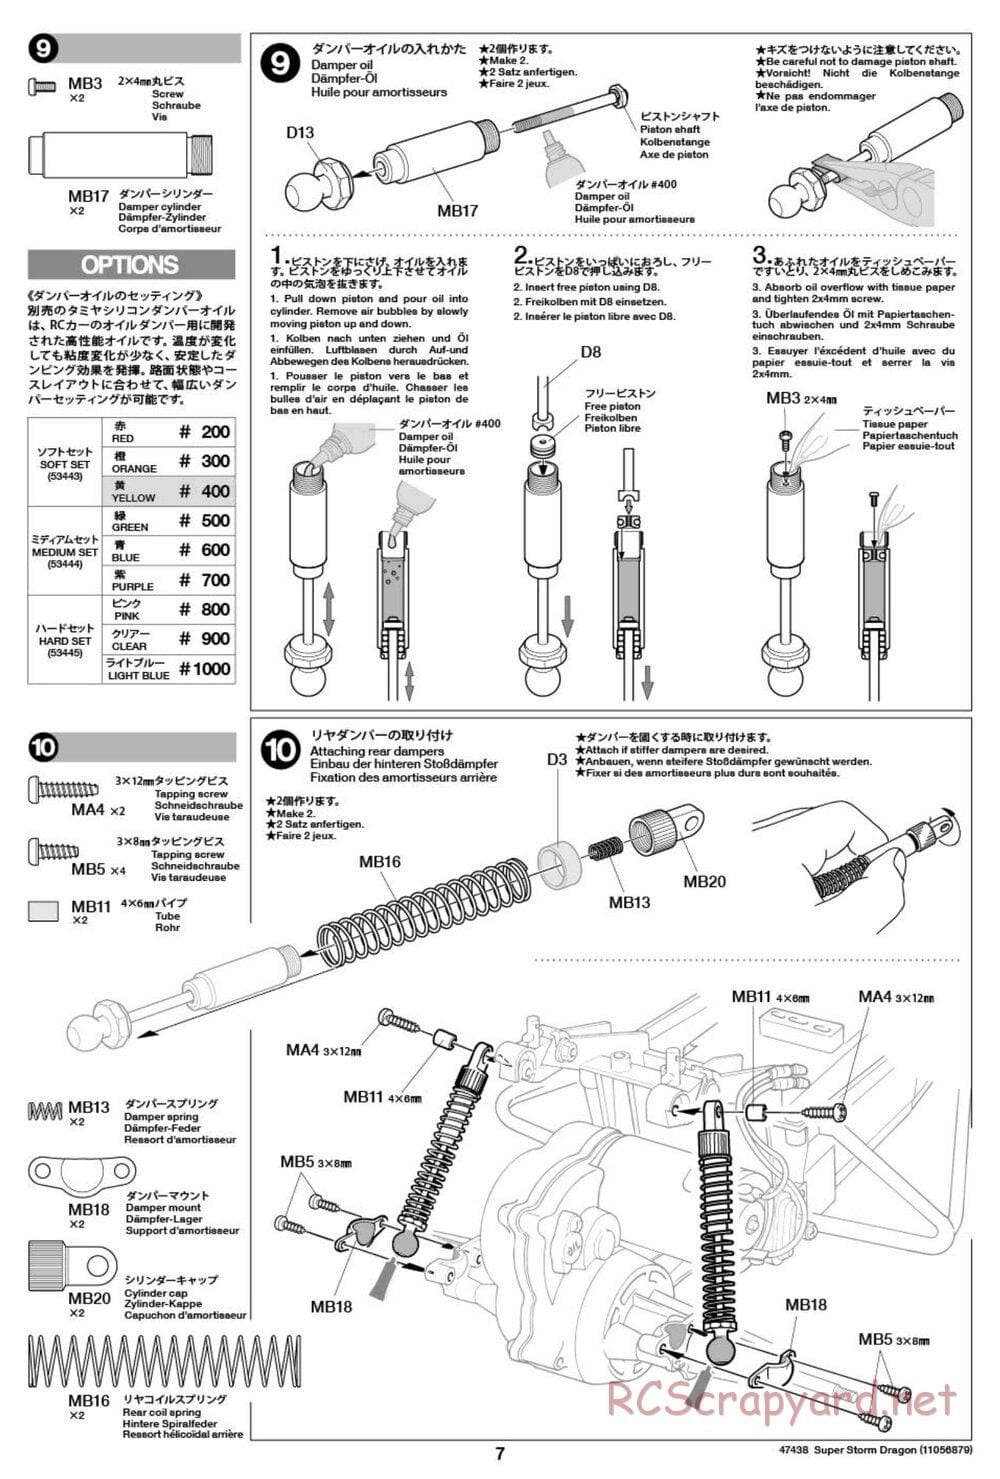 Tamiya - Super Storm Dragon Chassis - Manual - Page 7